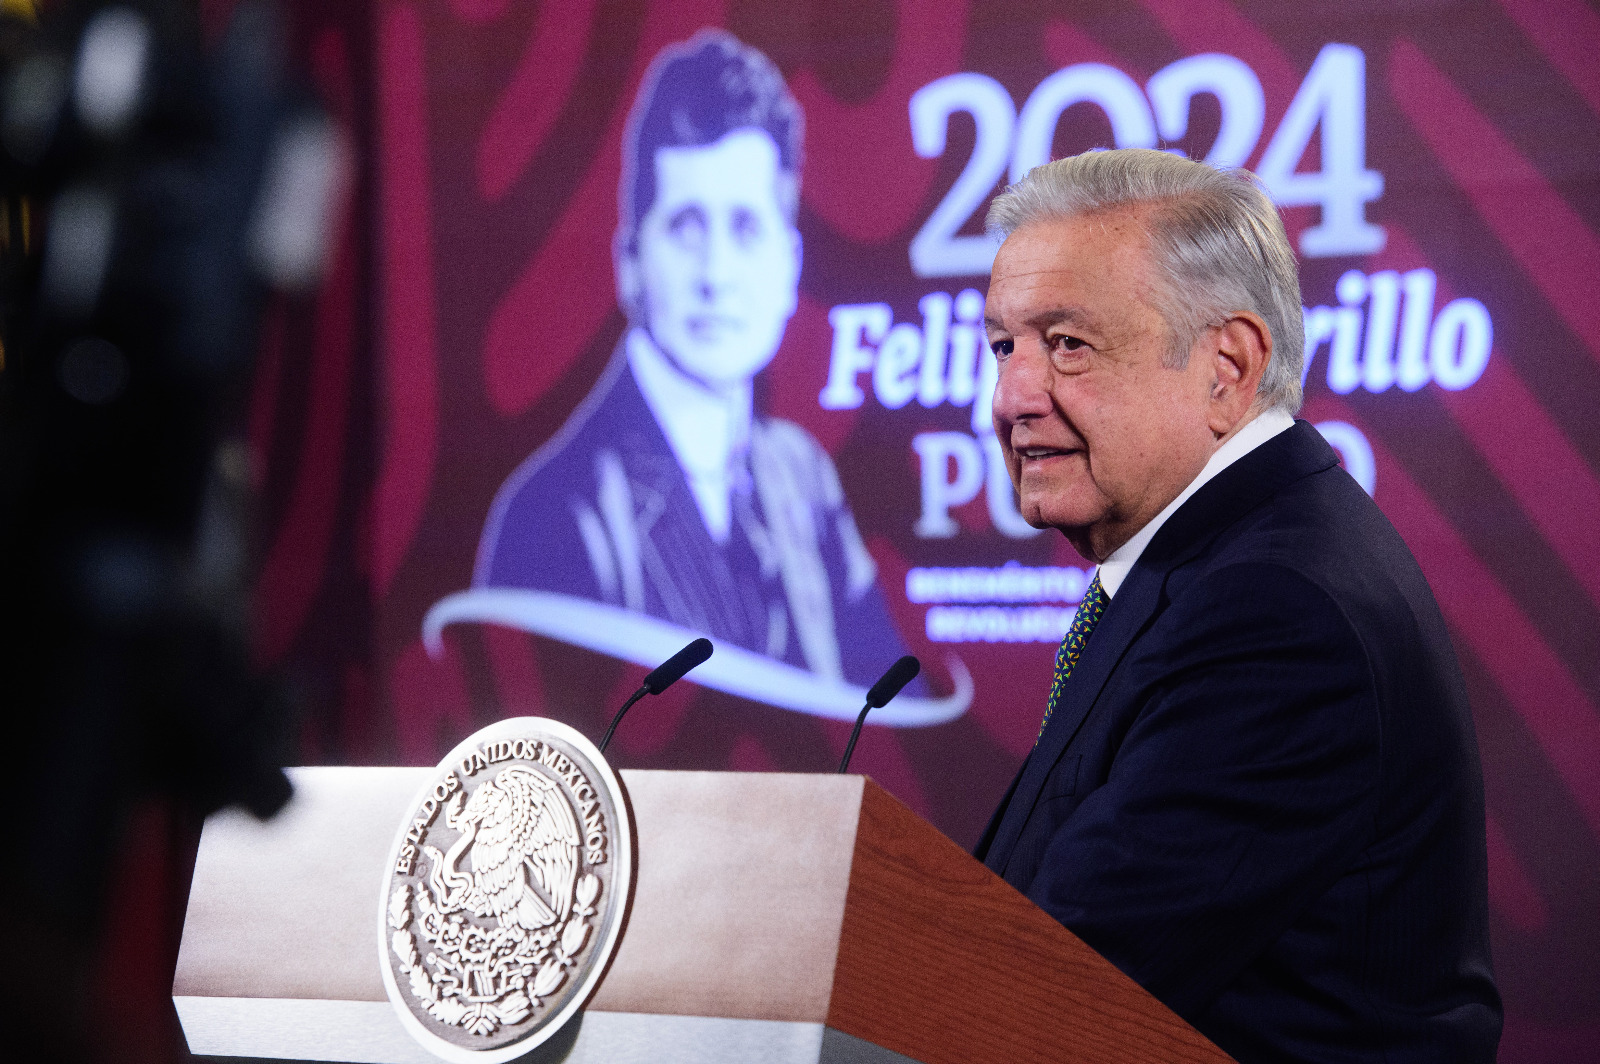 Pronostica López Obrador crecimiento del 3.5 por ciento en 2024